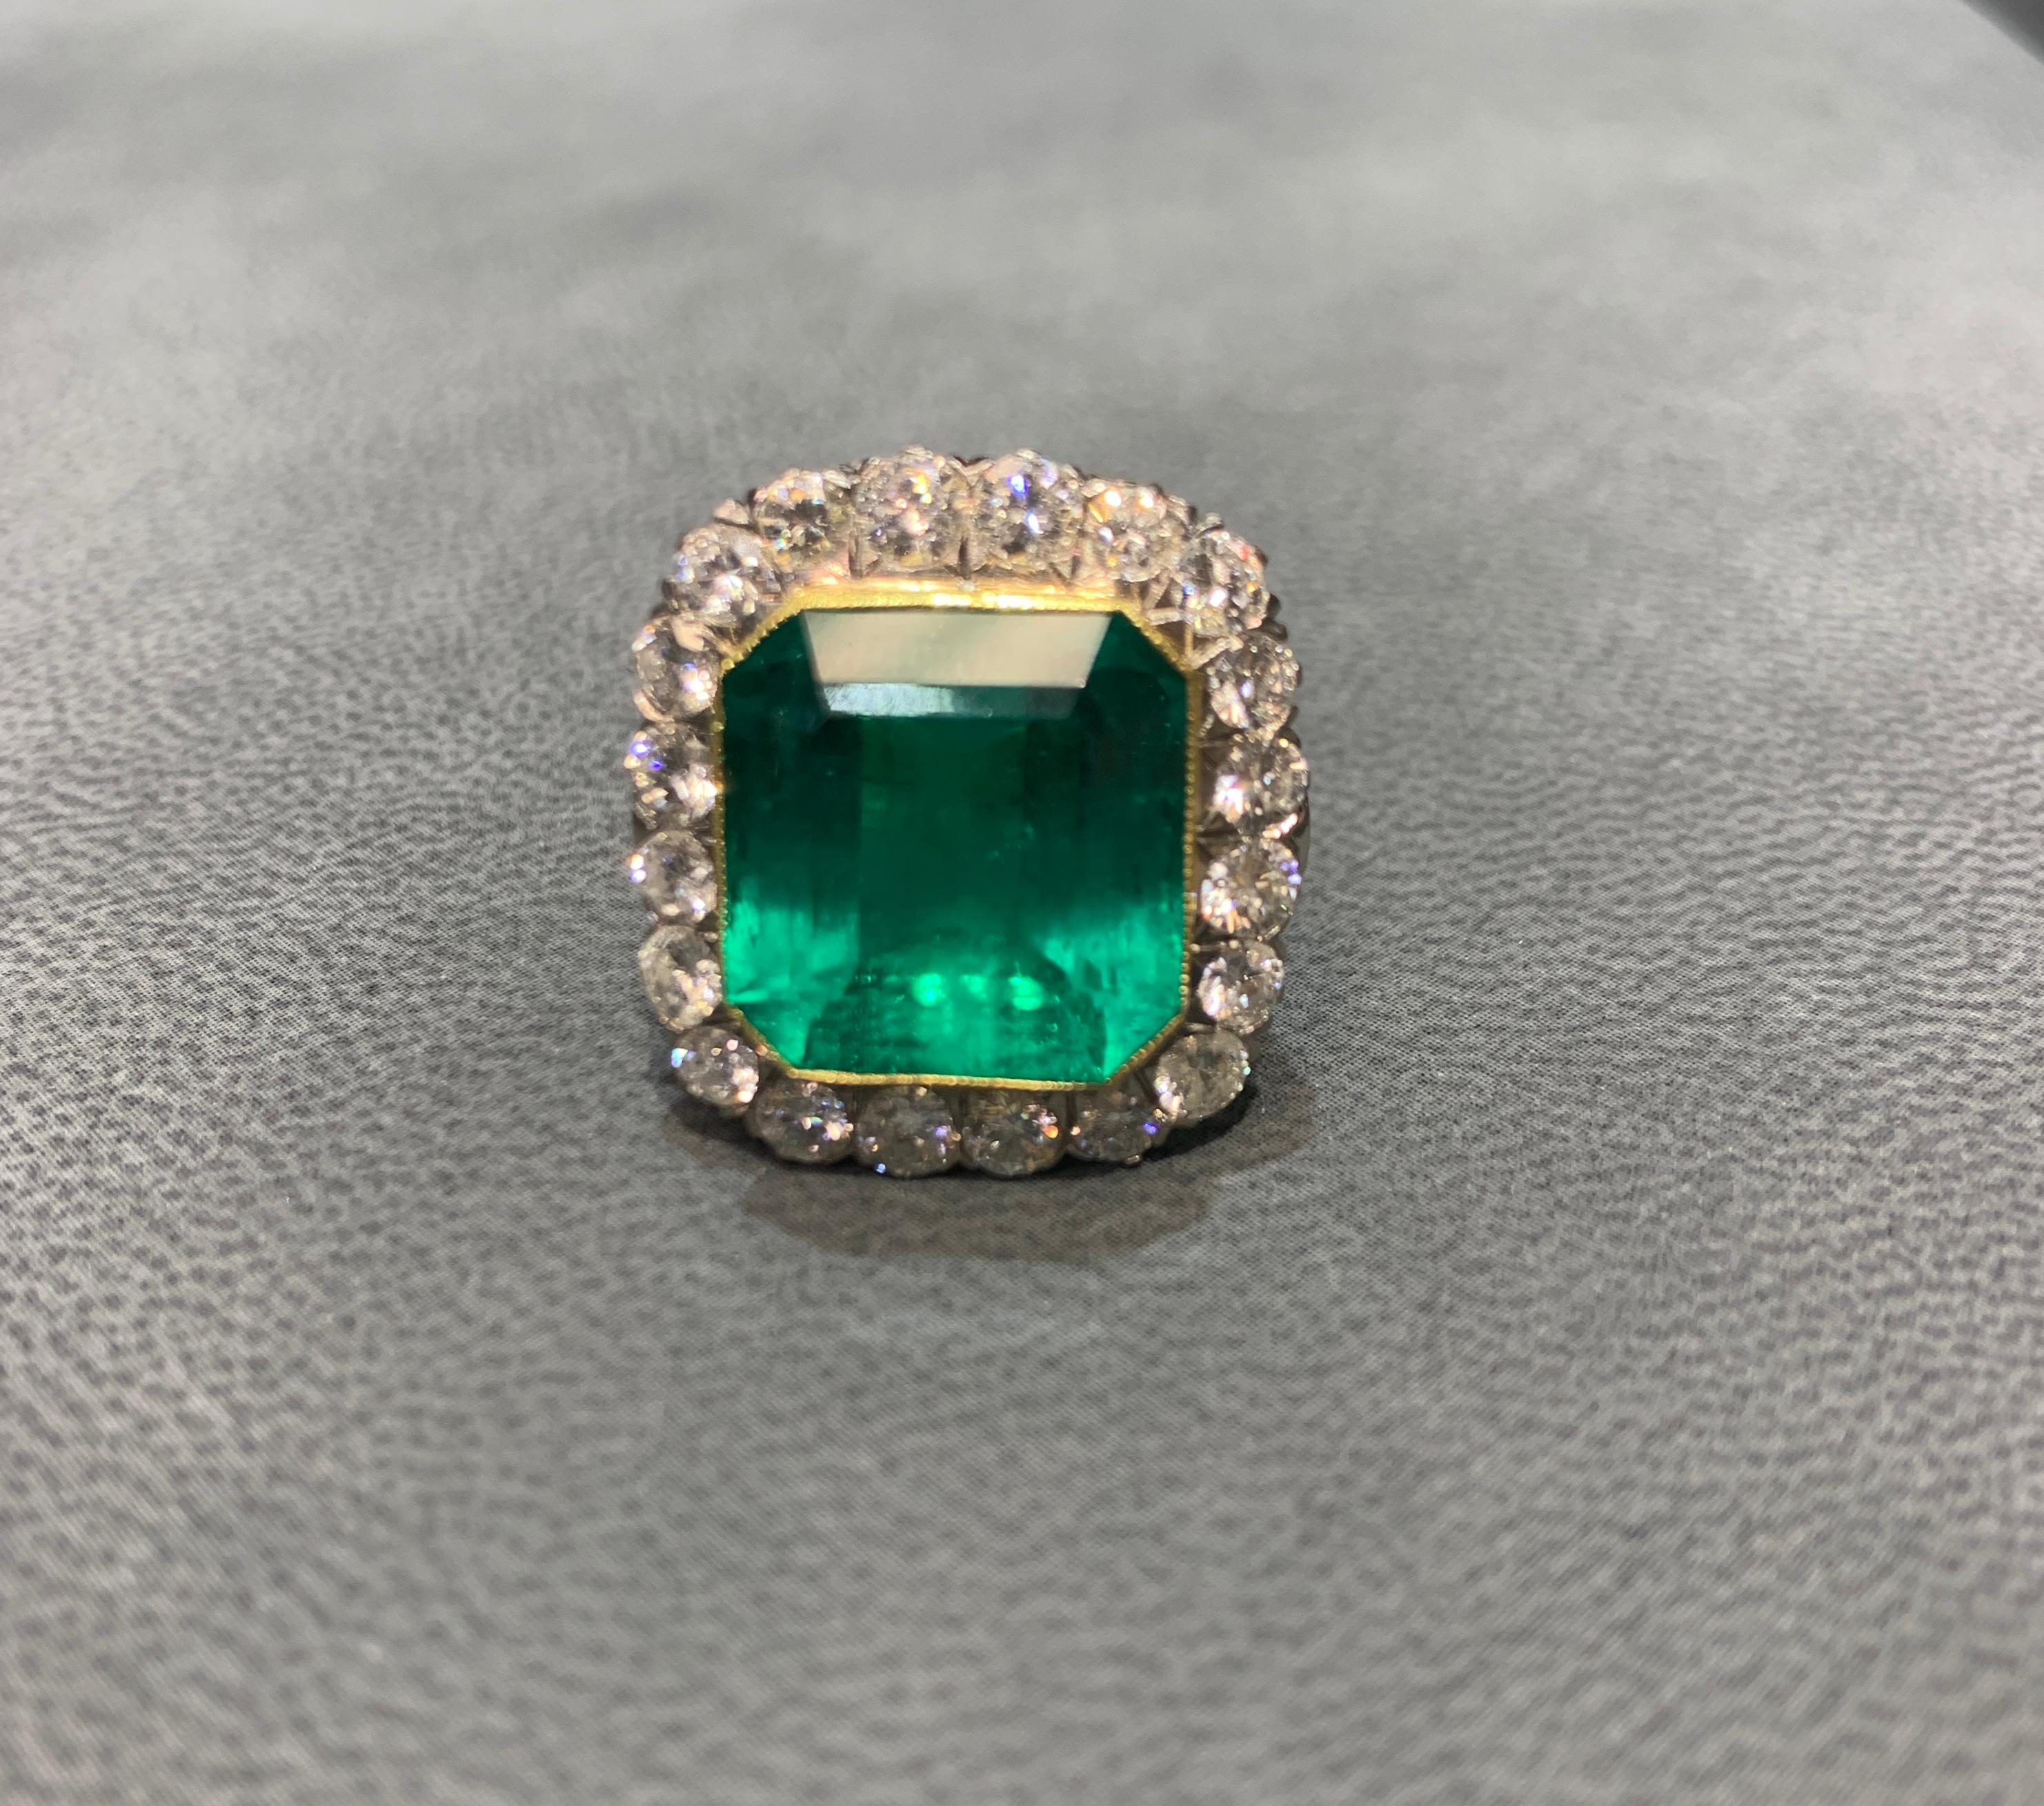  Smaragd & Diamant Ring 
AGL-zertifizierter Kolumbianer
Gelbgold 
Smaragd Gewicht: ca. 21,00 Karat
Ungefähres Diamantgewicht: 6,16 Karat
Ringgröße: 6.25
Kostenlose Größenanpassung 